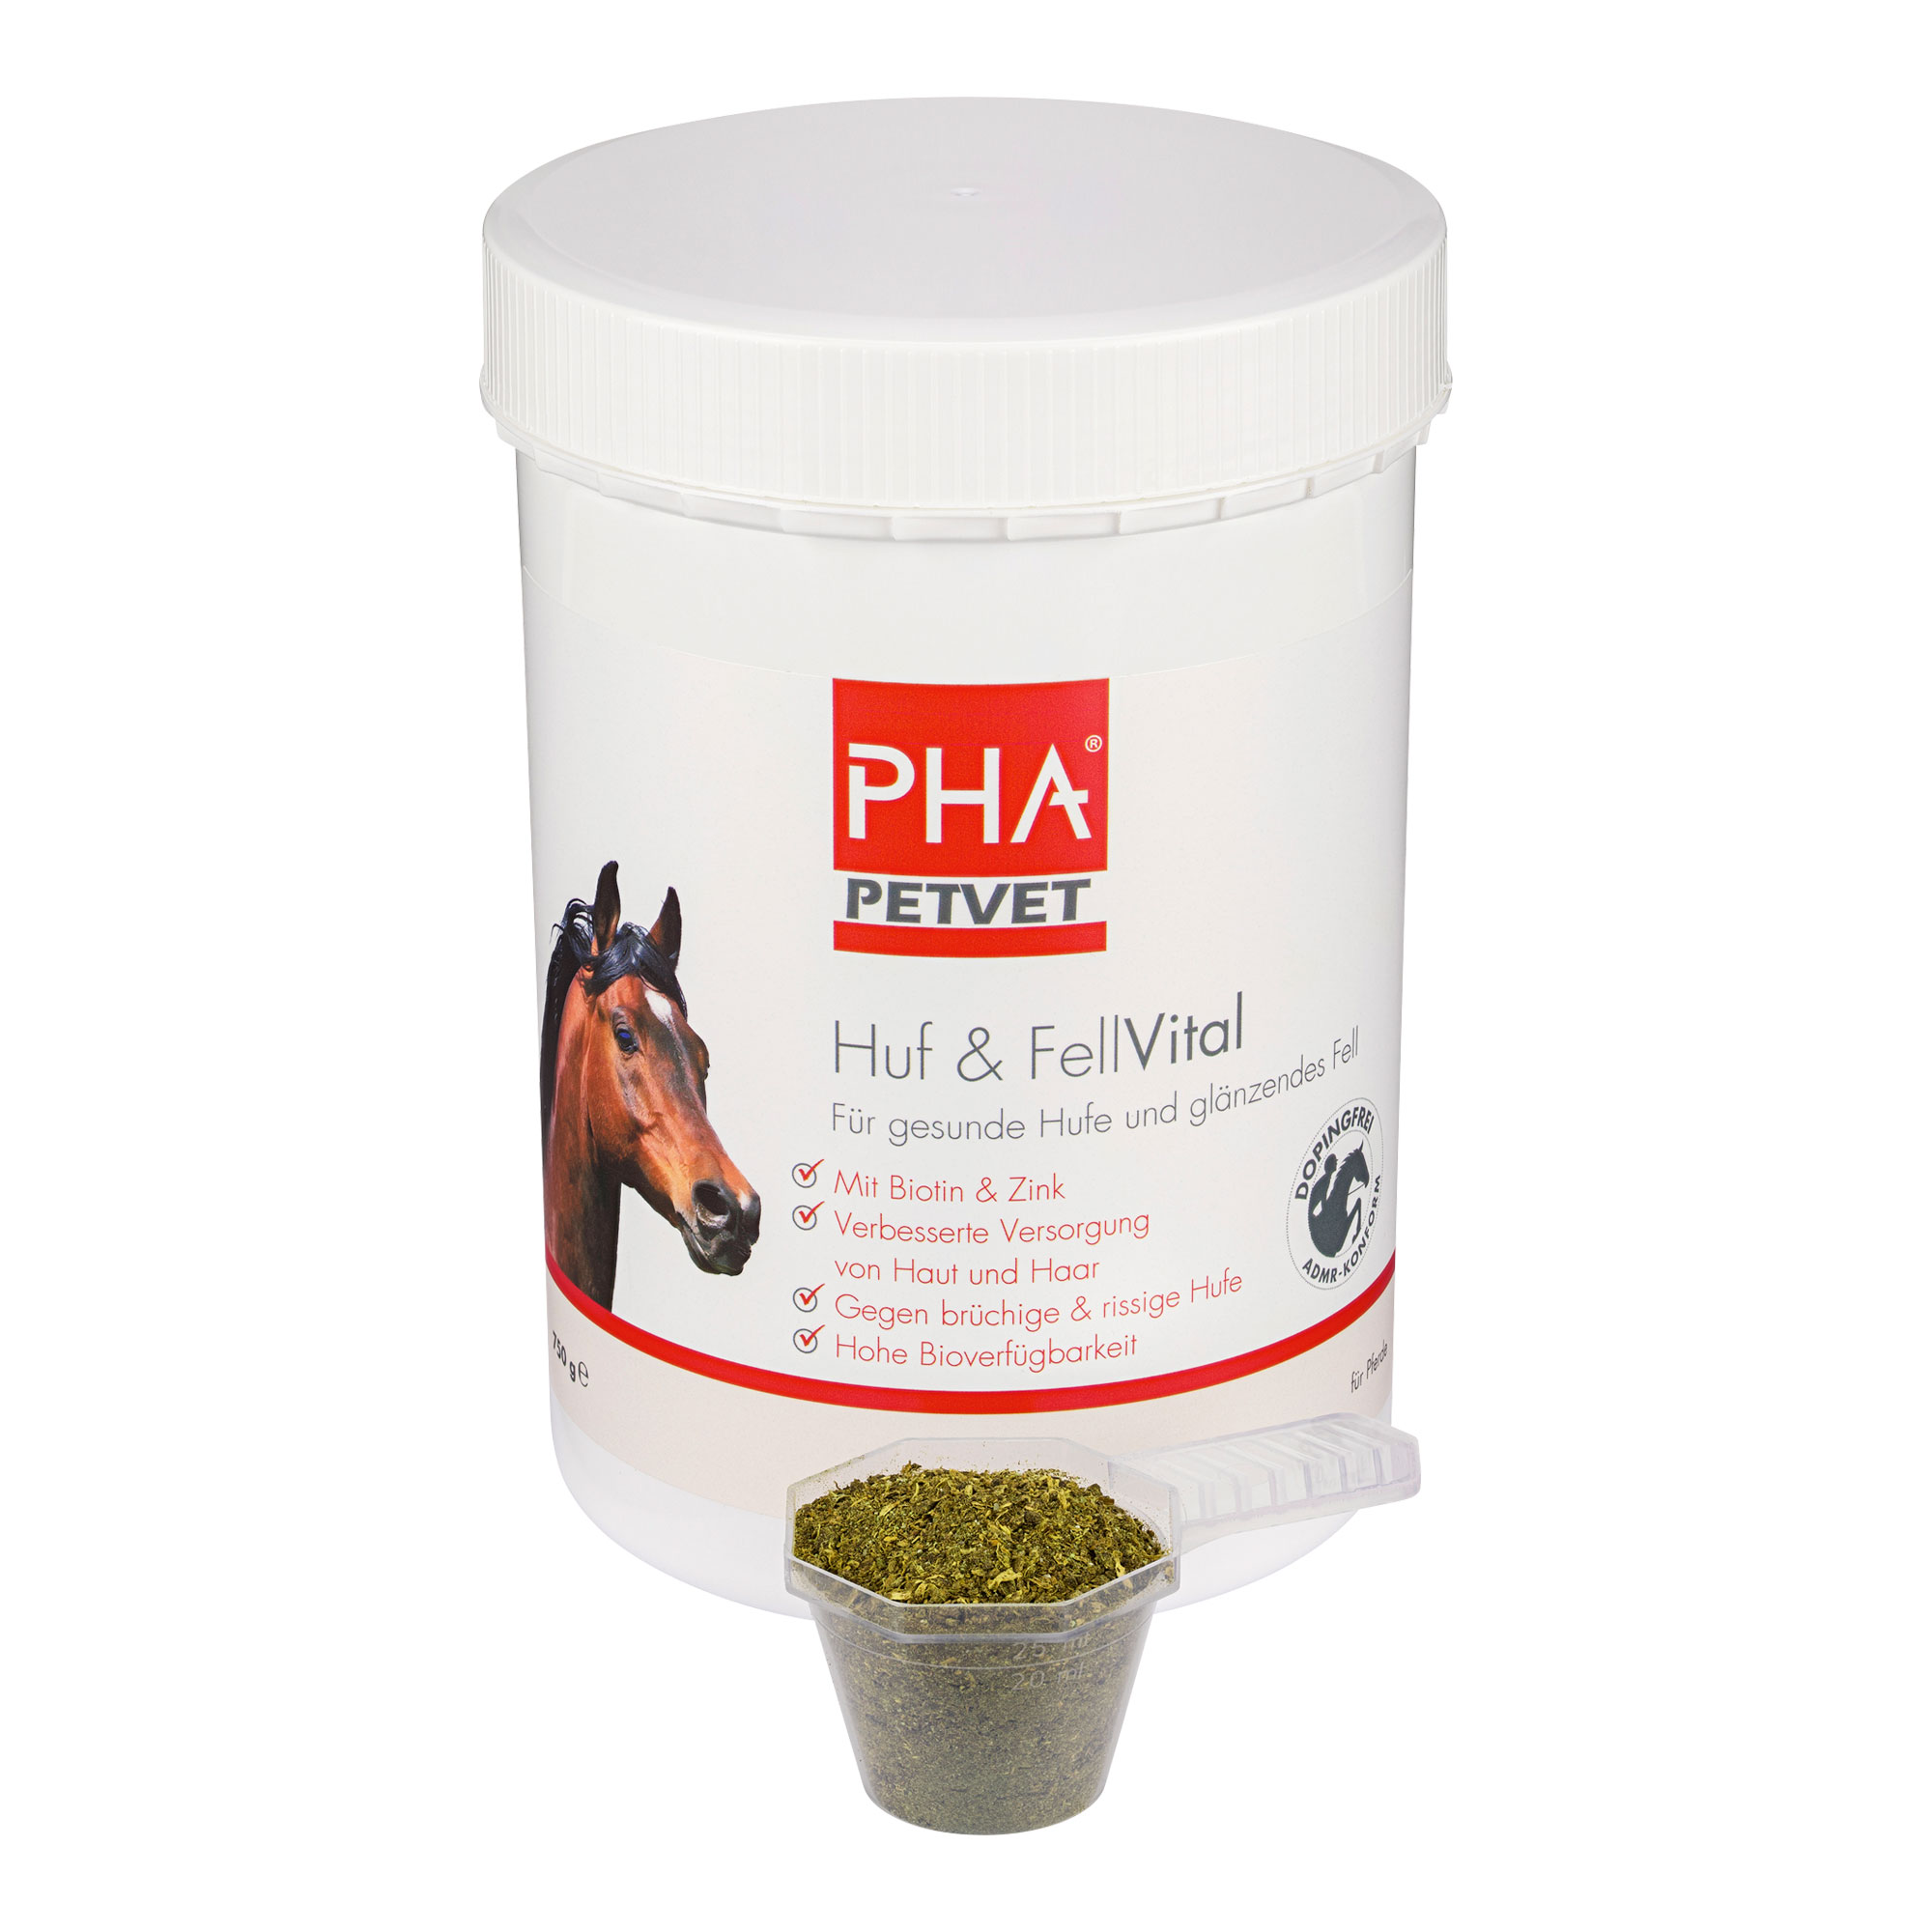 Ergänzungsfuttermittel für Pferde - für gesunde Hufe und glänzendes Fell.